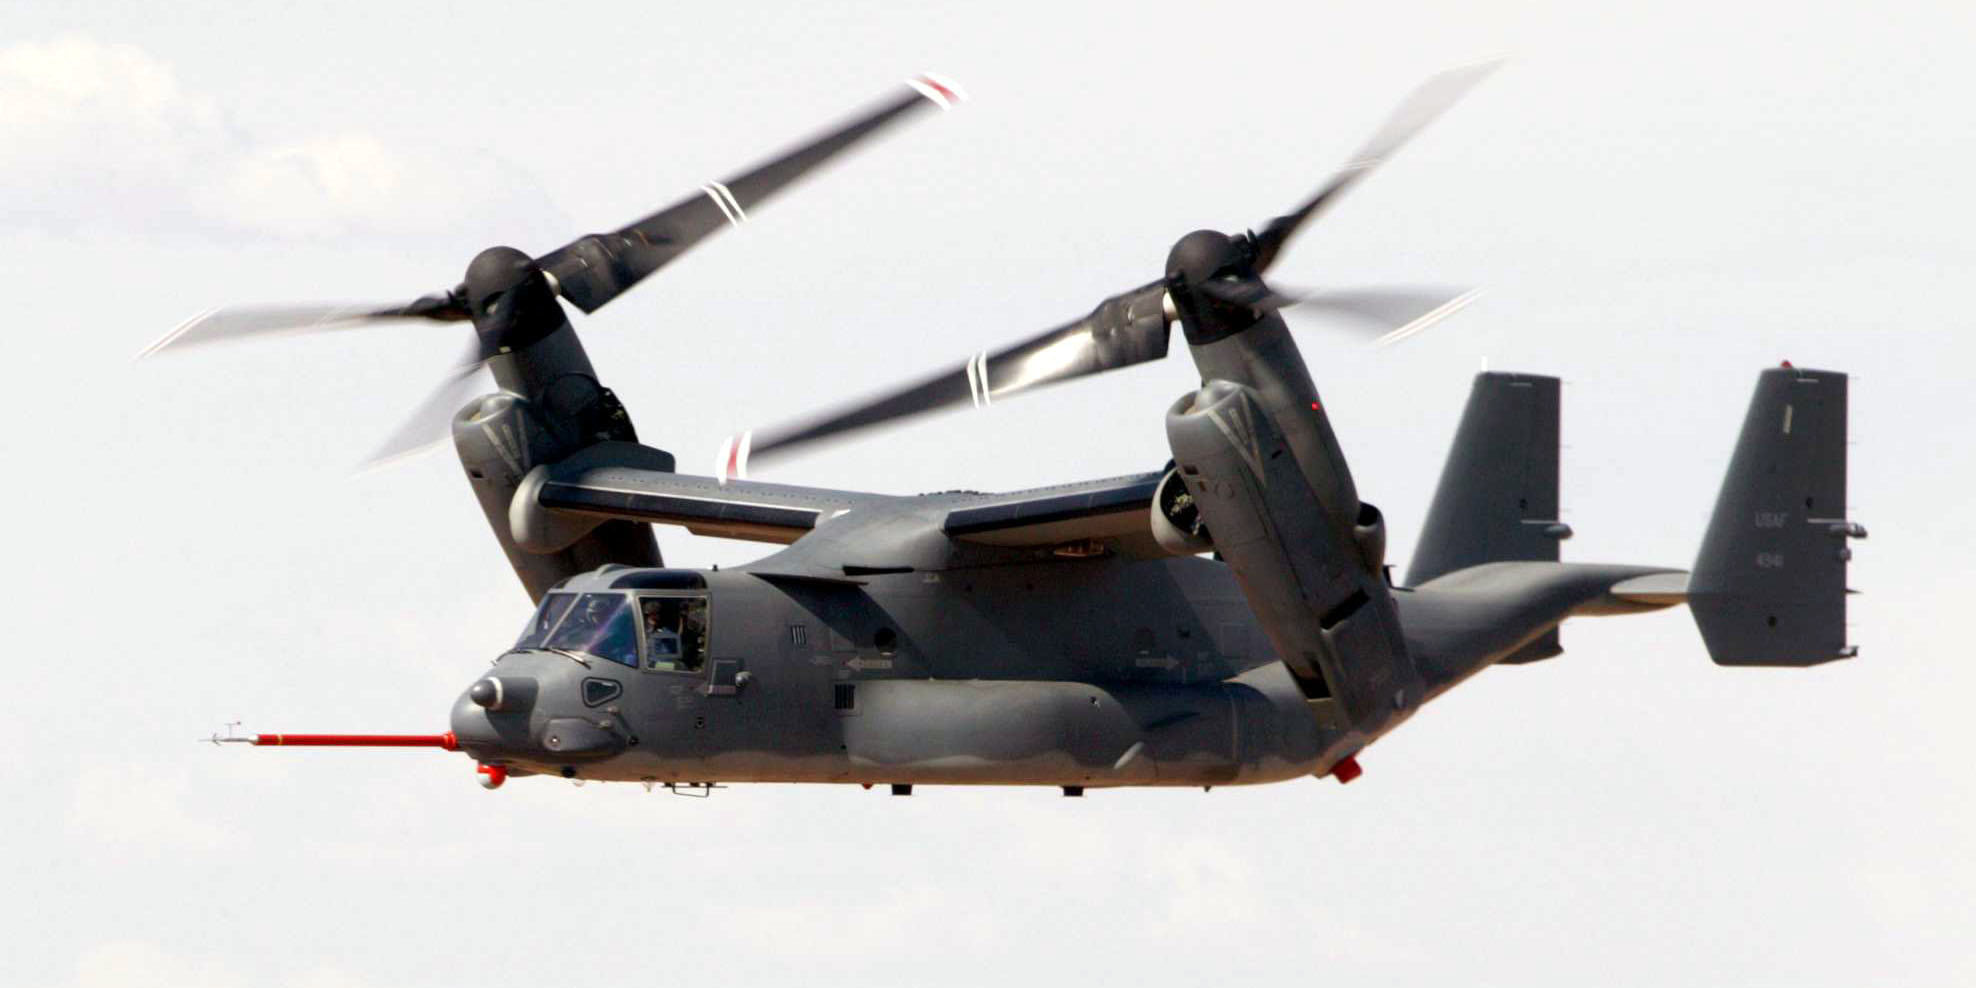 Νεκρά θεωρούνται και τα 8 μέλη του αμερικανικού Osprey που κατέπεσε στην Ιαπωνία: Ερωτηματικά για την αξιοπιστία